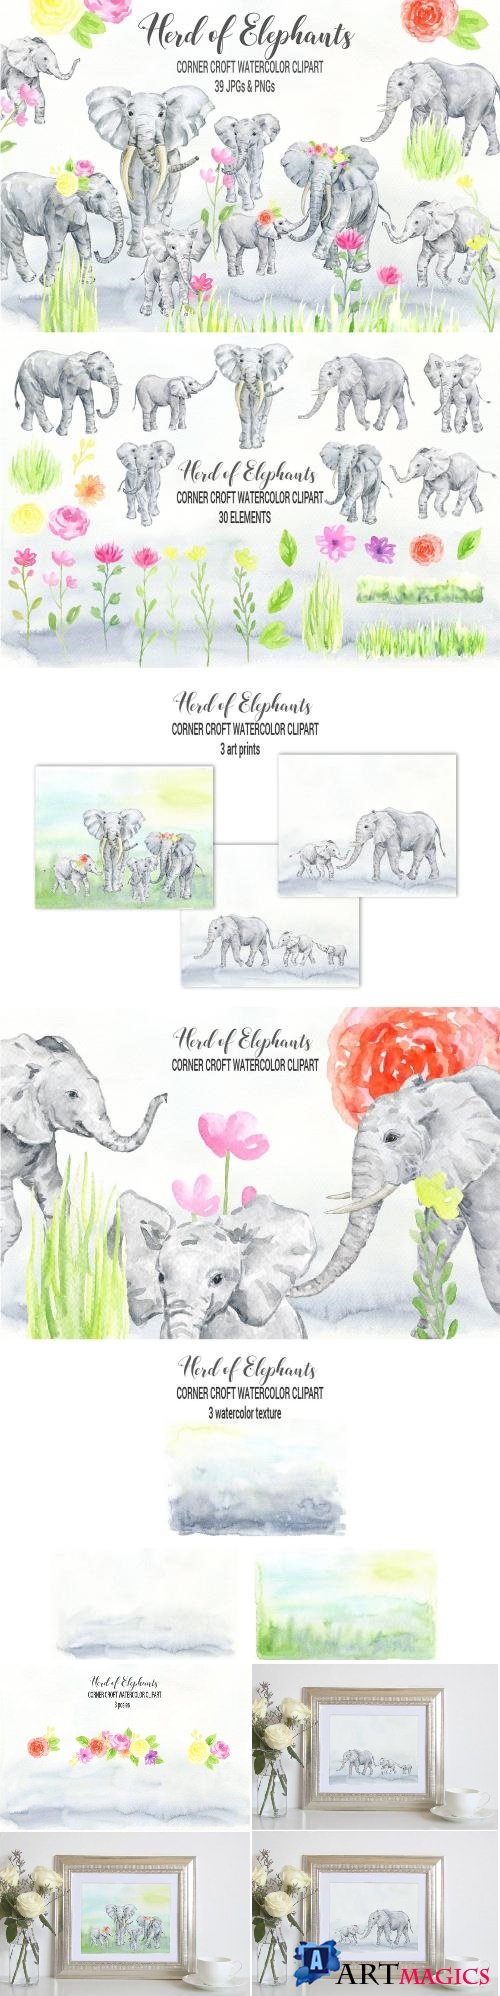 Watercolor herd of elephants - 2380009